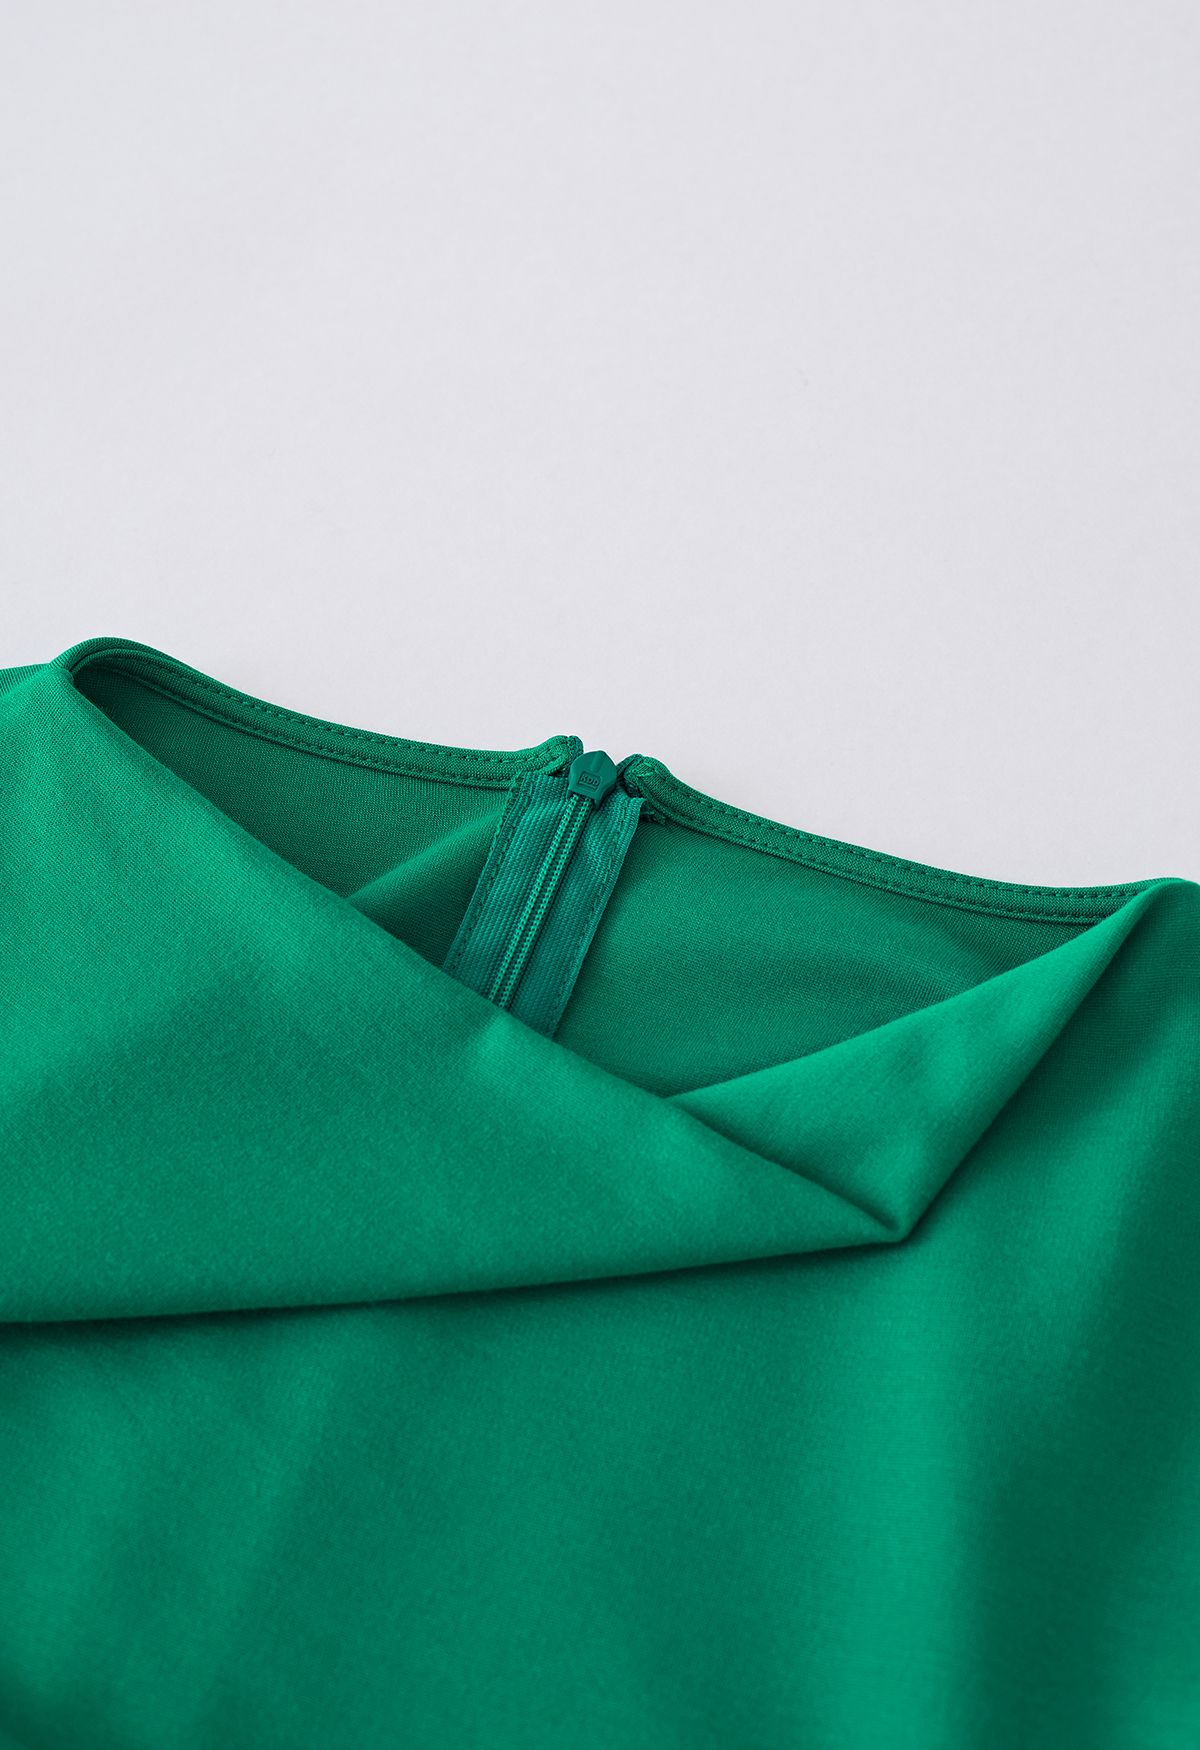 ثنى العنق Ruched الخصر بلا أكمام فستان باللون الأخضر